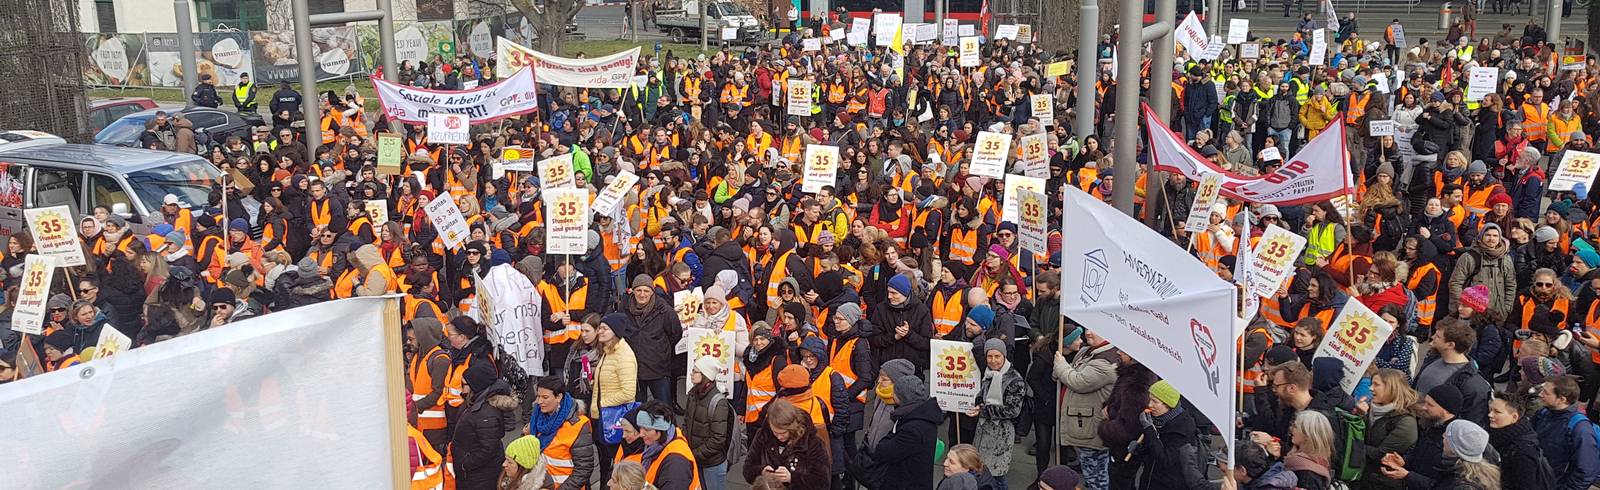 Streik im Sozialbereich: Über 1.500 bei Demo